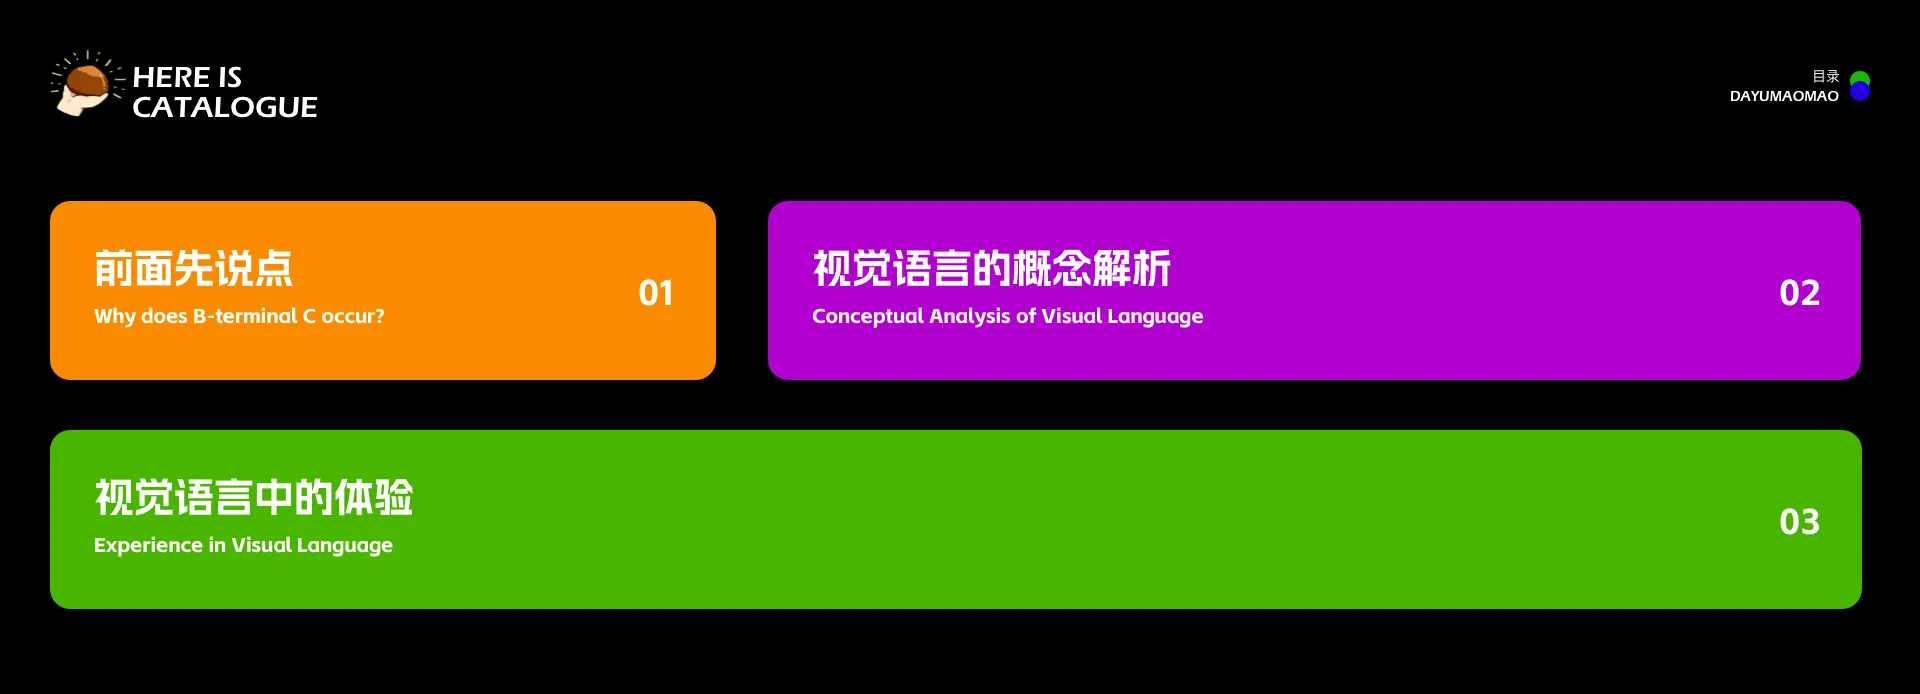 今天来聊一聊视觉语言的体验升级